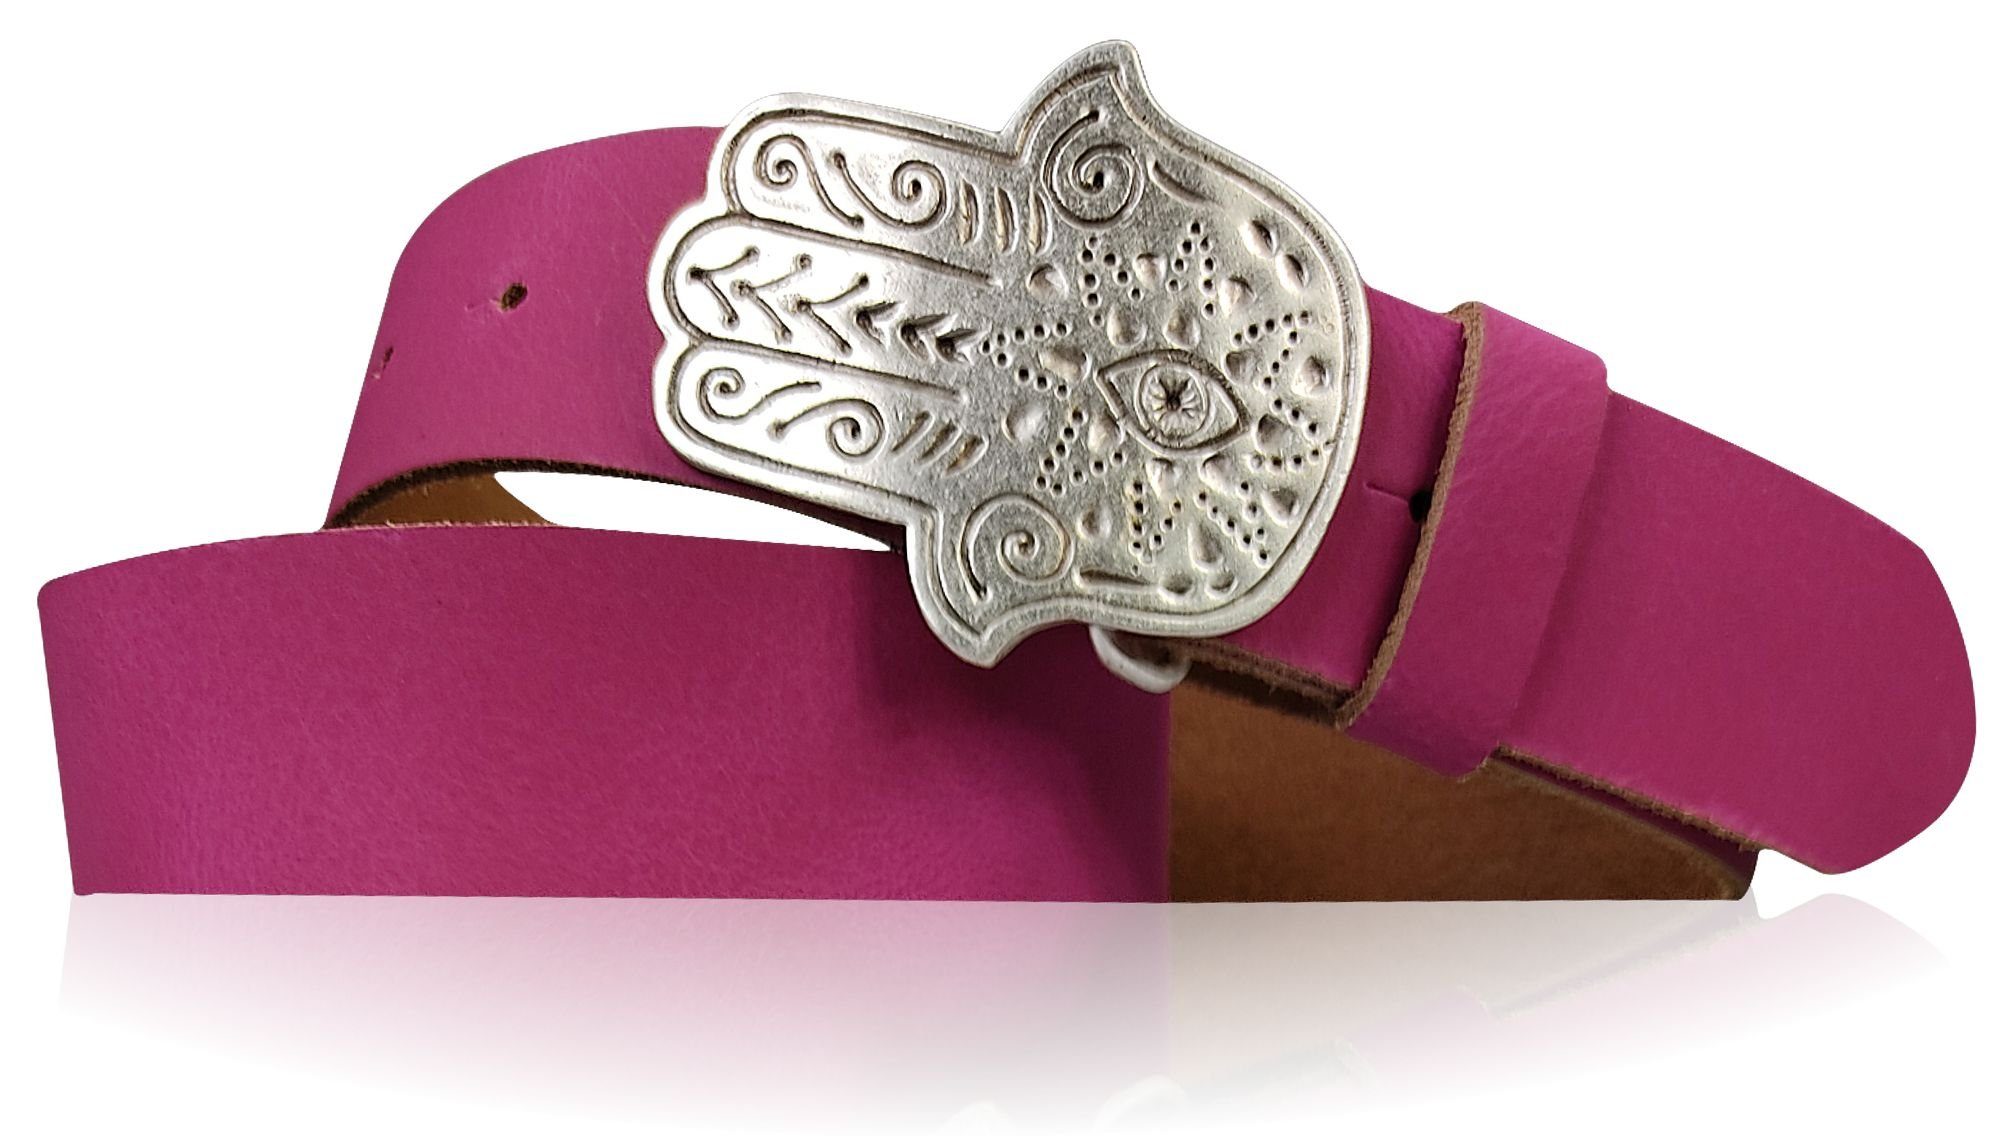 FRONHOFER Hüftgürtel 18610 Damen Ledergürtel 4 cm mit versilberter Hand der Fatima Gürtelschnalle Pink